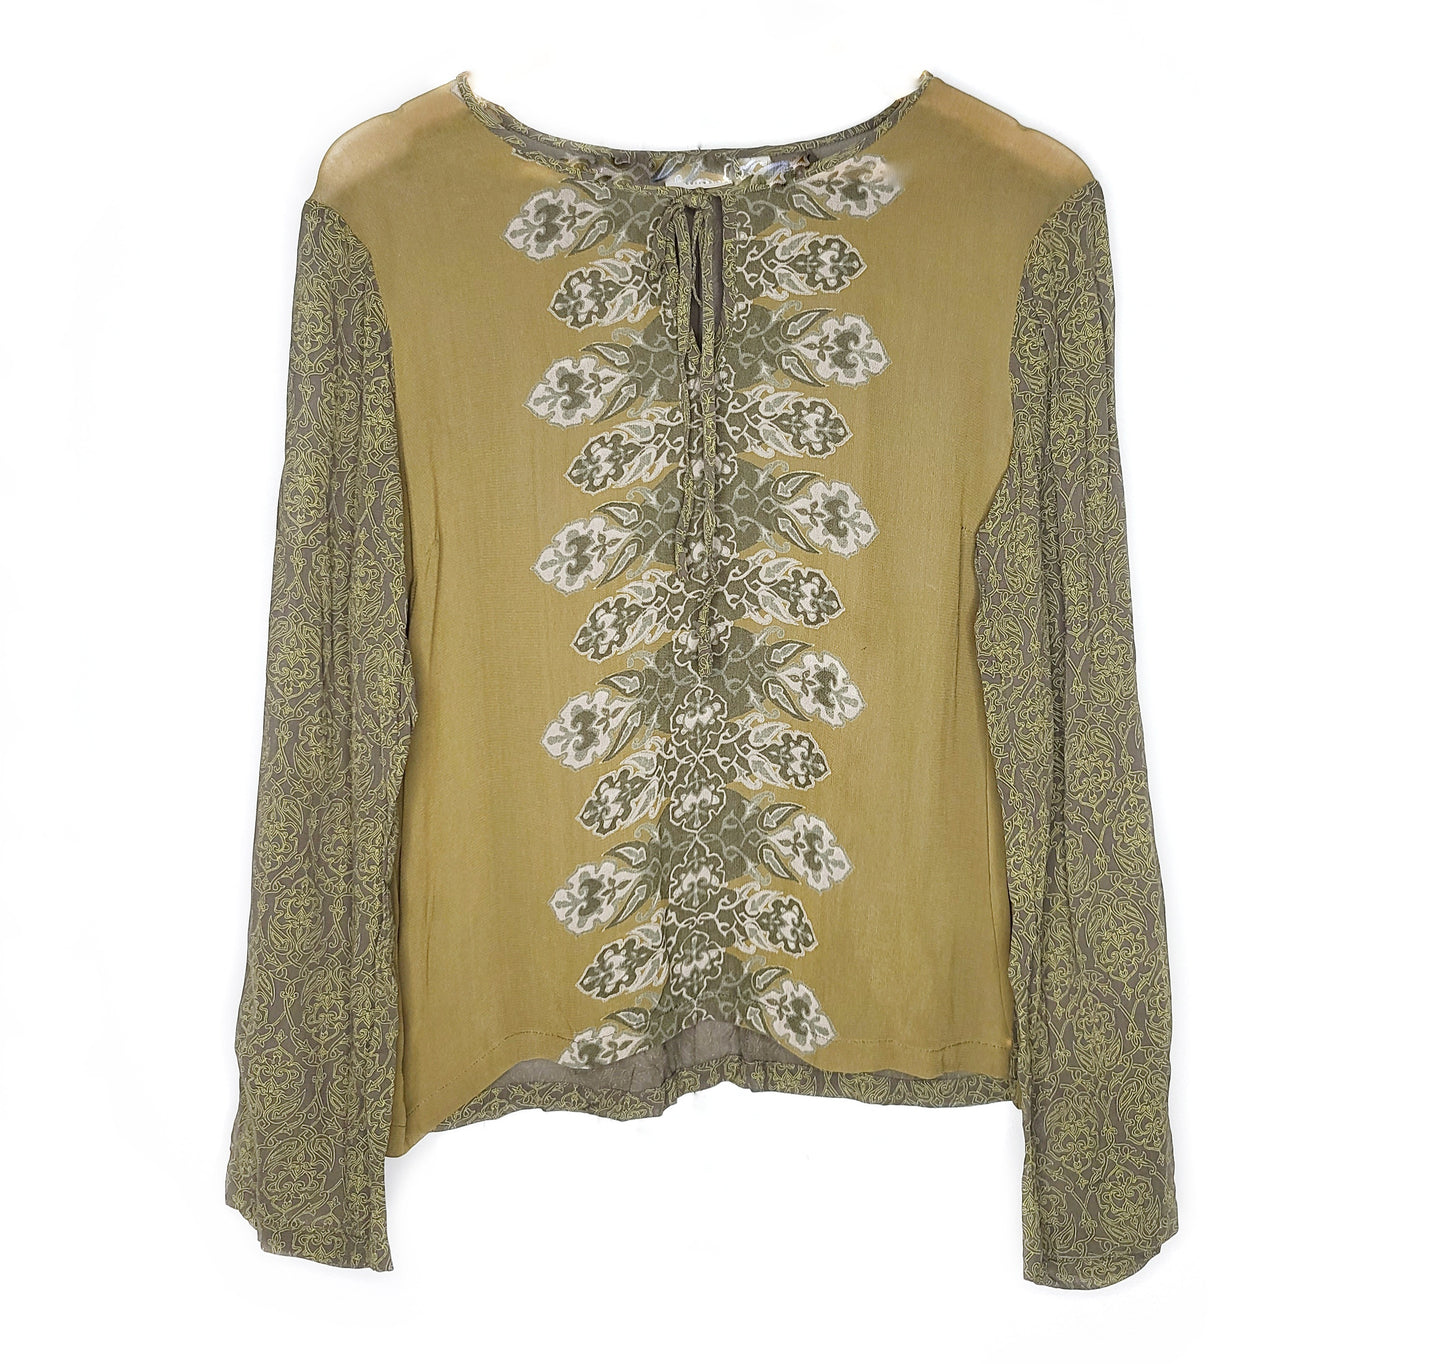 Boho vintage blouse motif hippie kaki fairygrunge forestcore 